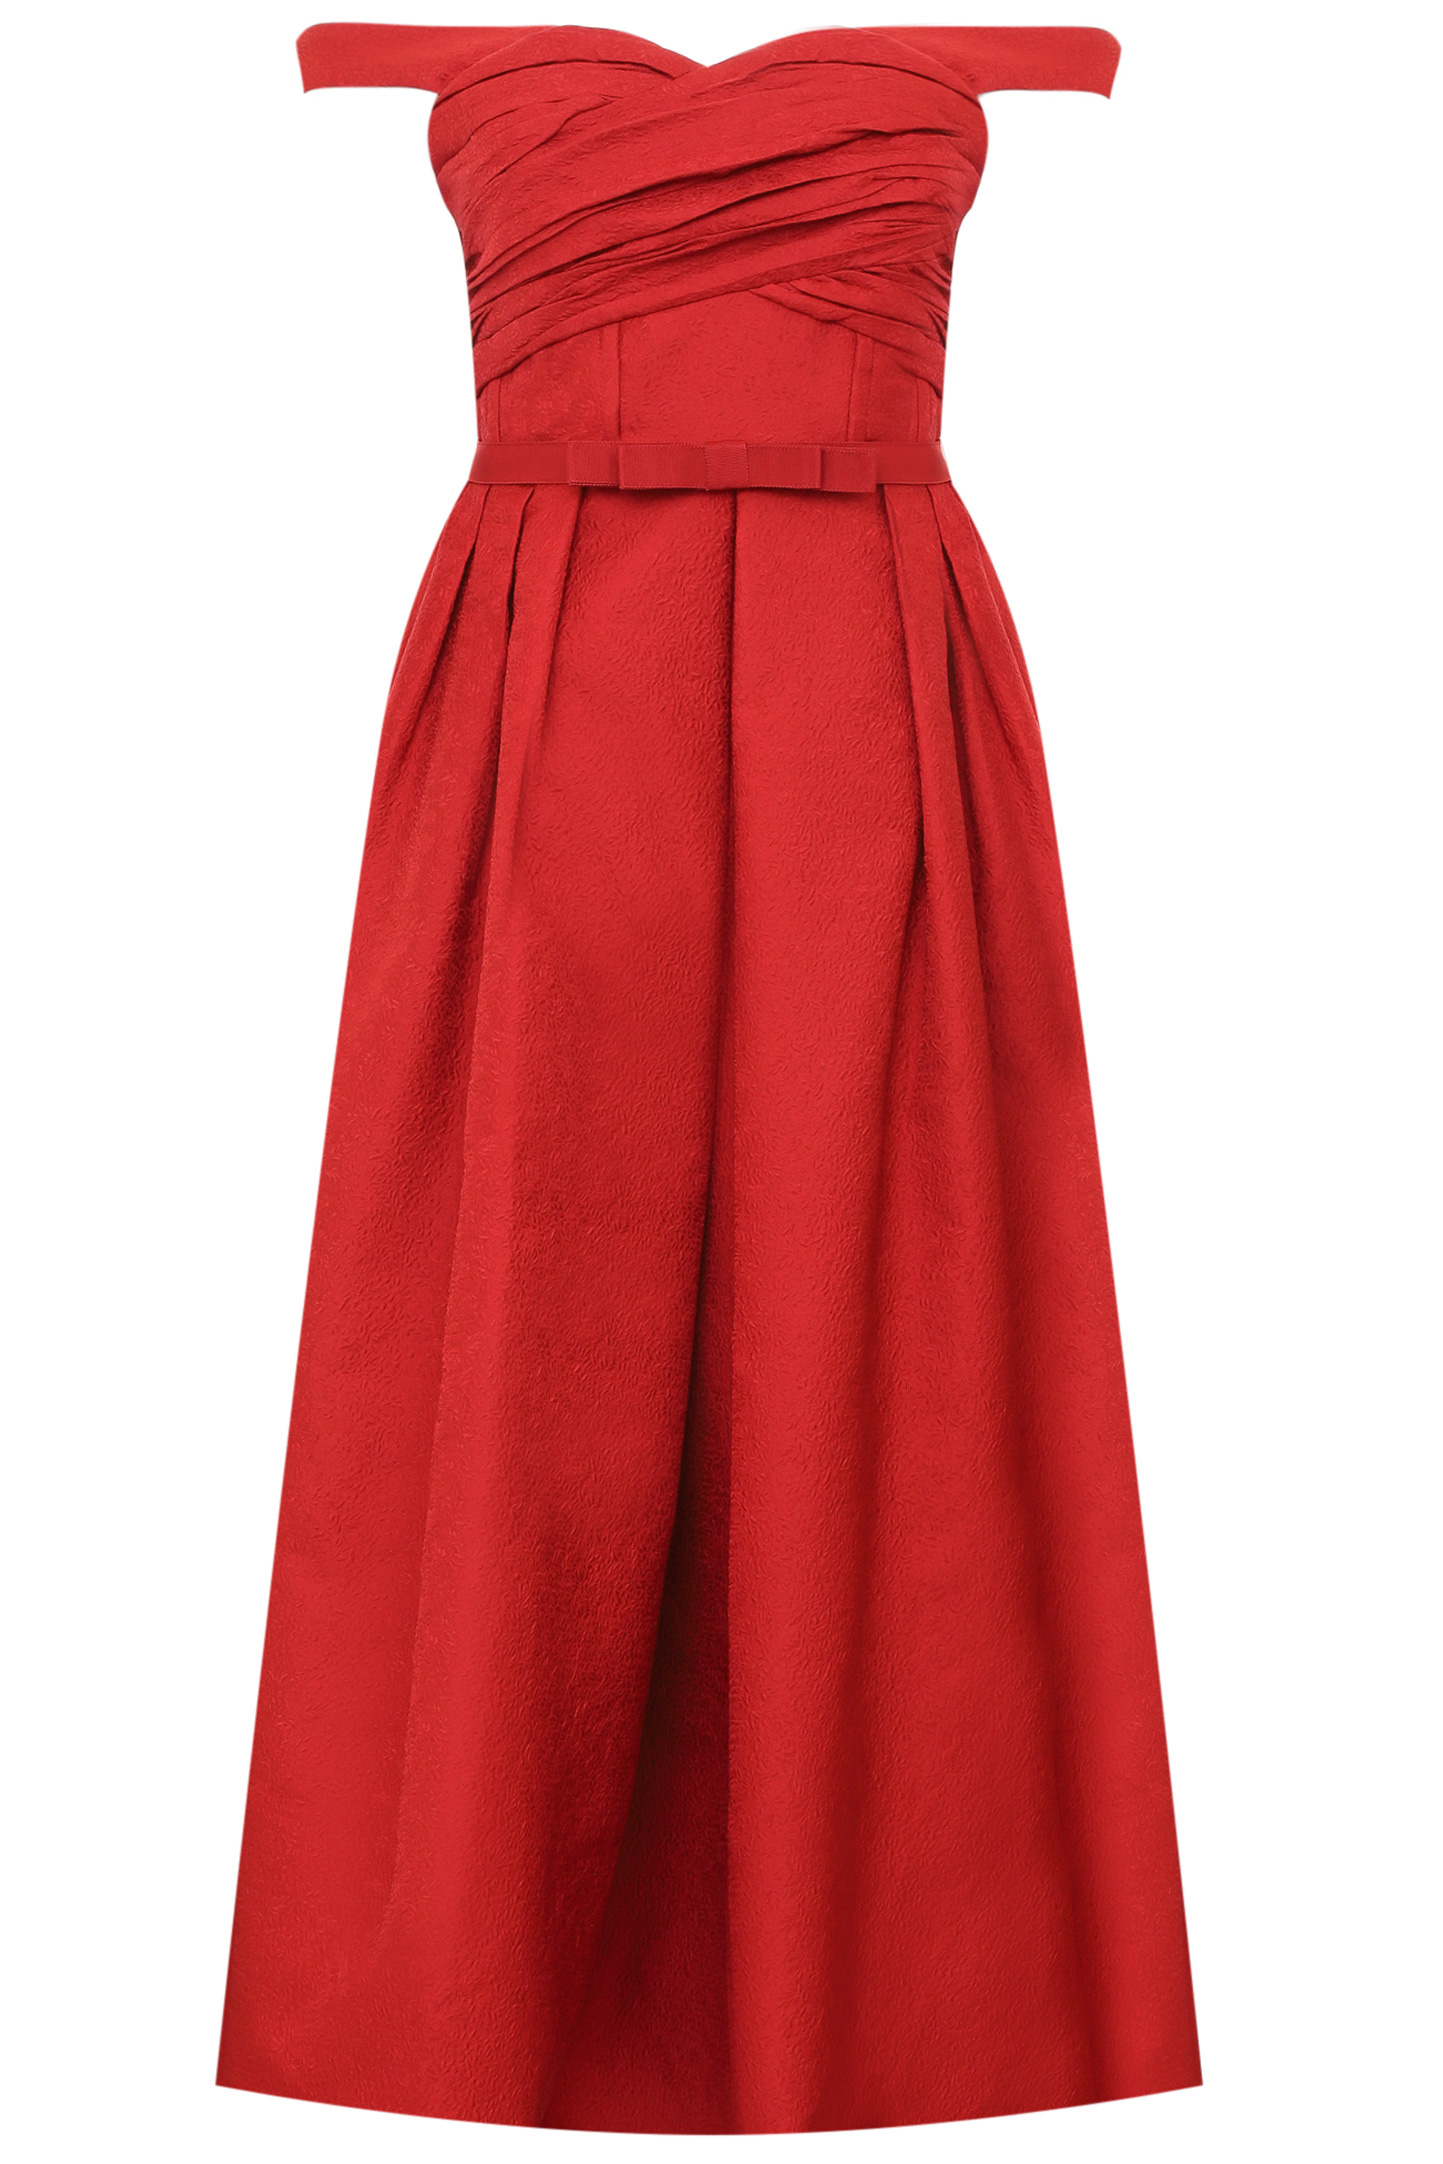 Платье SELF PORTRAIT RS22-044, цвет: Бордовый, Женский